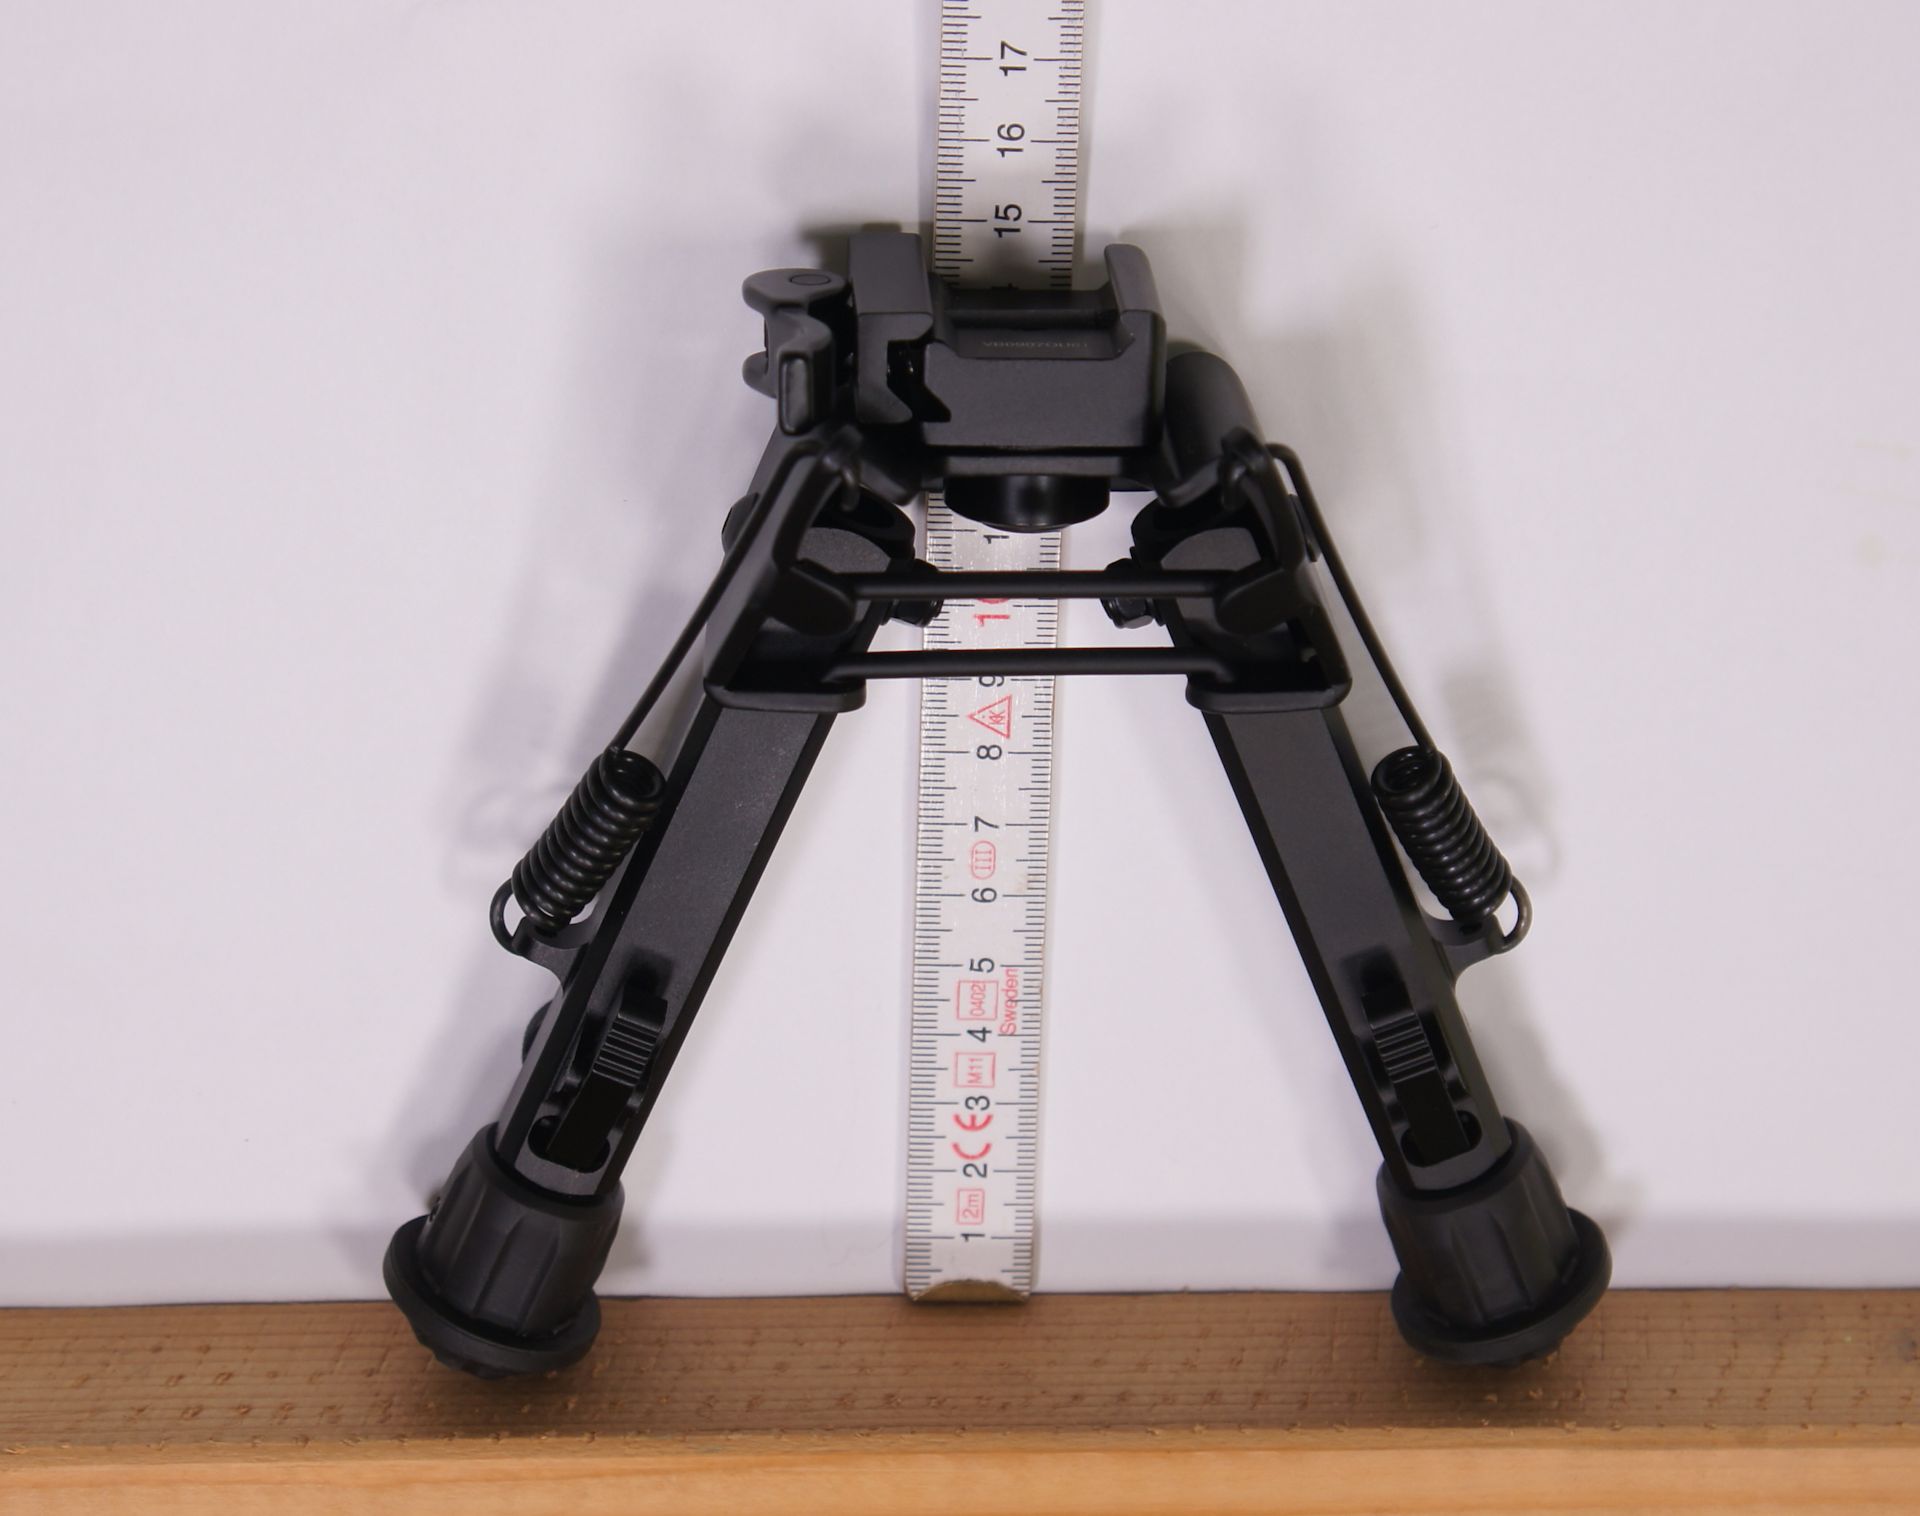 Aufstellhhe vom Zweibein TL-BP98Q, ohne die Beine auszuziehen, ca. 15cm mi